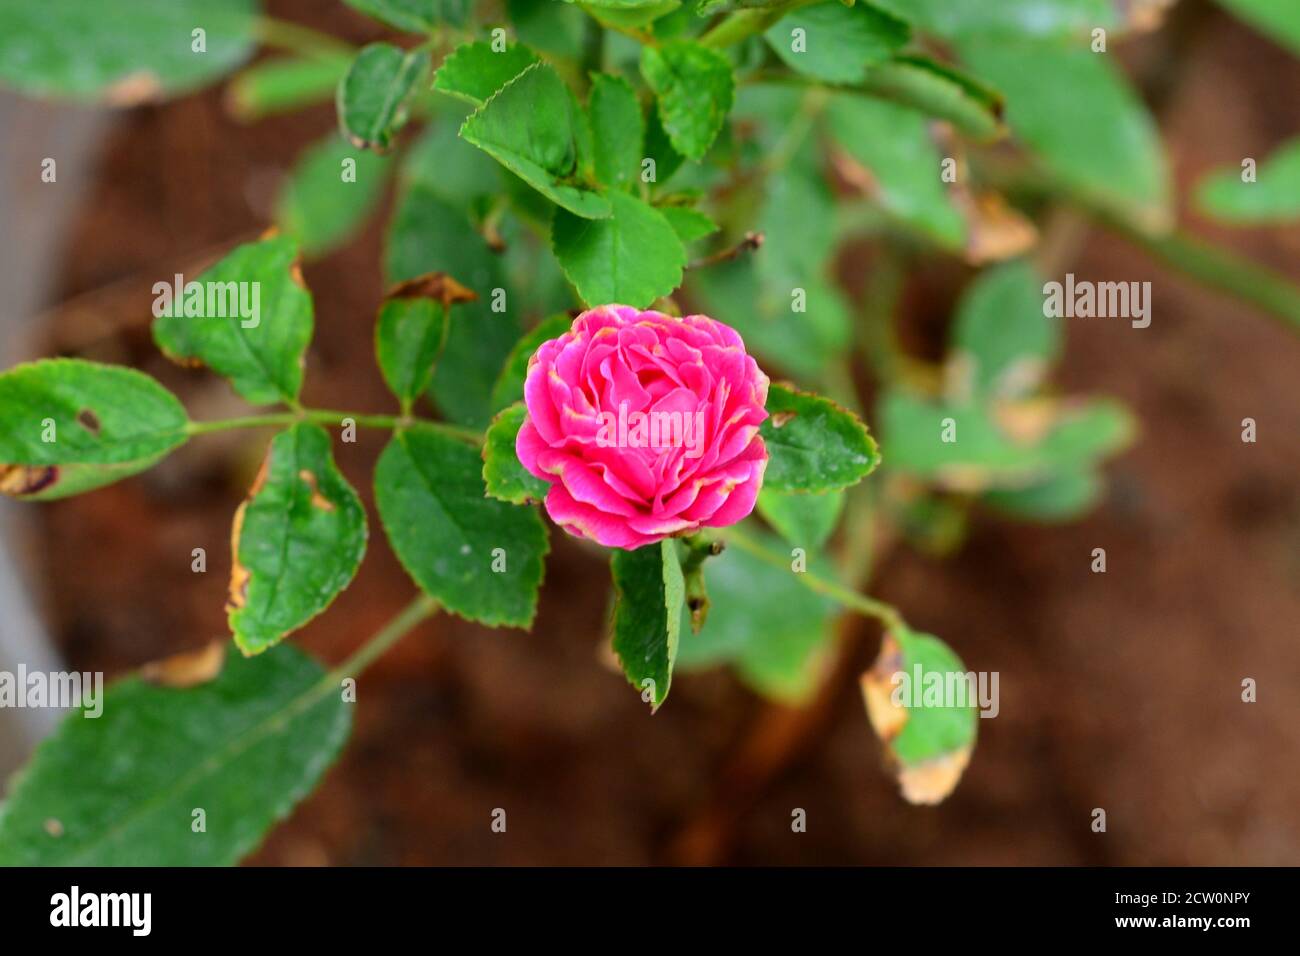 Eine einzelne kleine rosa Knopfrose mit einem Kontrast grünen Blatt Hintergrund an einem regnerischen Morgen. Stockfoto